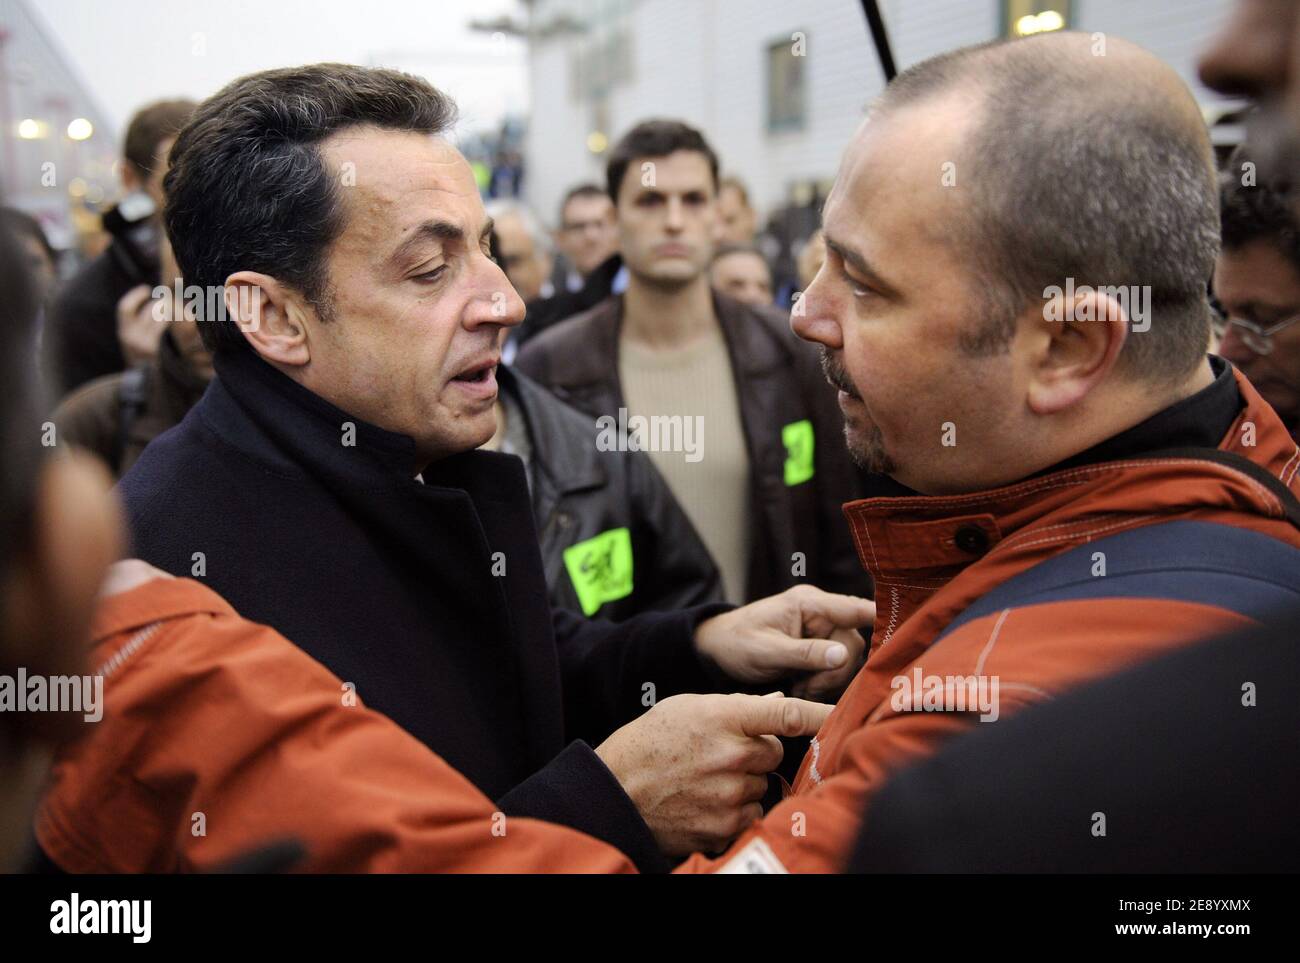 Der französische Präsident Nicolas Sarkozy (L) unternimmt am 26. Oktober 2007 einen Besuch in einem Wartungsgelände des nationalen Eisenbahnunternehmens SNCF in Saint-Denis, einem nördlichen Vorort von Paris, Frankreich. Sarkozy hat gestern eine Reihe von Maßnahmen eingeleitet, die darauf abzielen, eine grüne Revolution in Frankreich zu initiieren, einschließlich der Erweiterung der Straßenbahn- und TGV-Hochgeschwindigkeitszüge, und die Fahrer dazu gebracht, durch Boni und Strafen sauberere Autos zu kaufen. Foto von Eric Feferberg/Pool/ABACAPRESS.COM Stockfoto